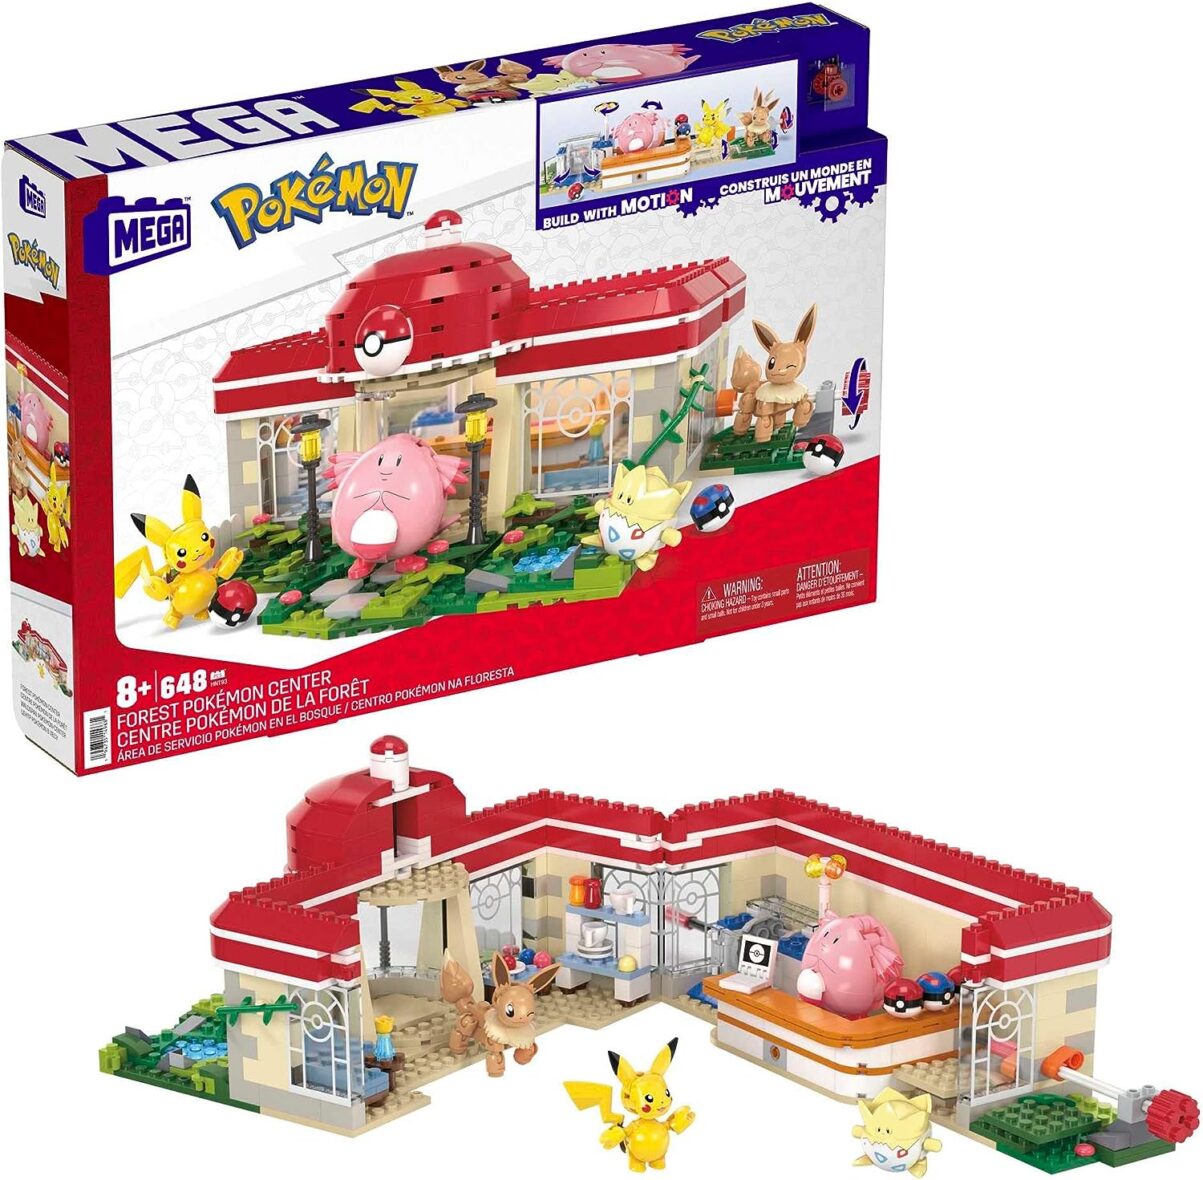 MEGA Pokémon Action Figure Building Toys, Forest Pokémon Center with 648 Pieces